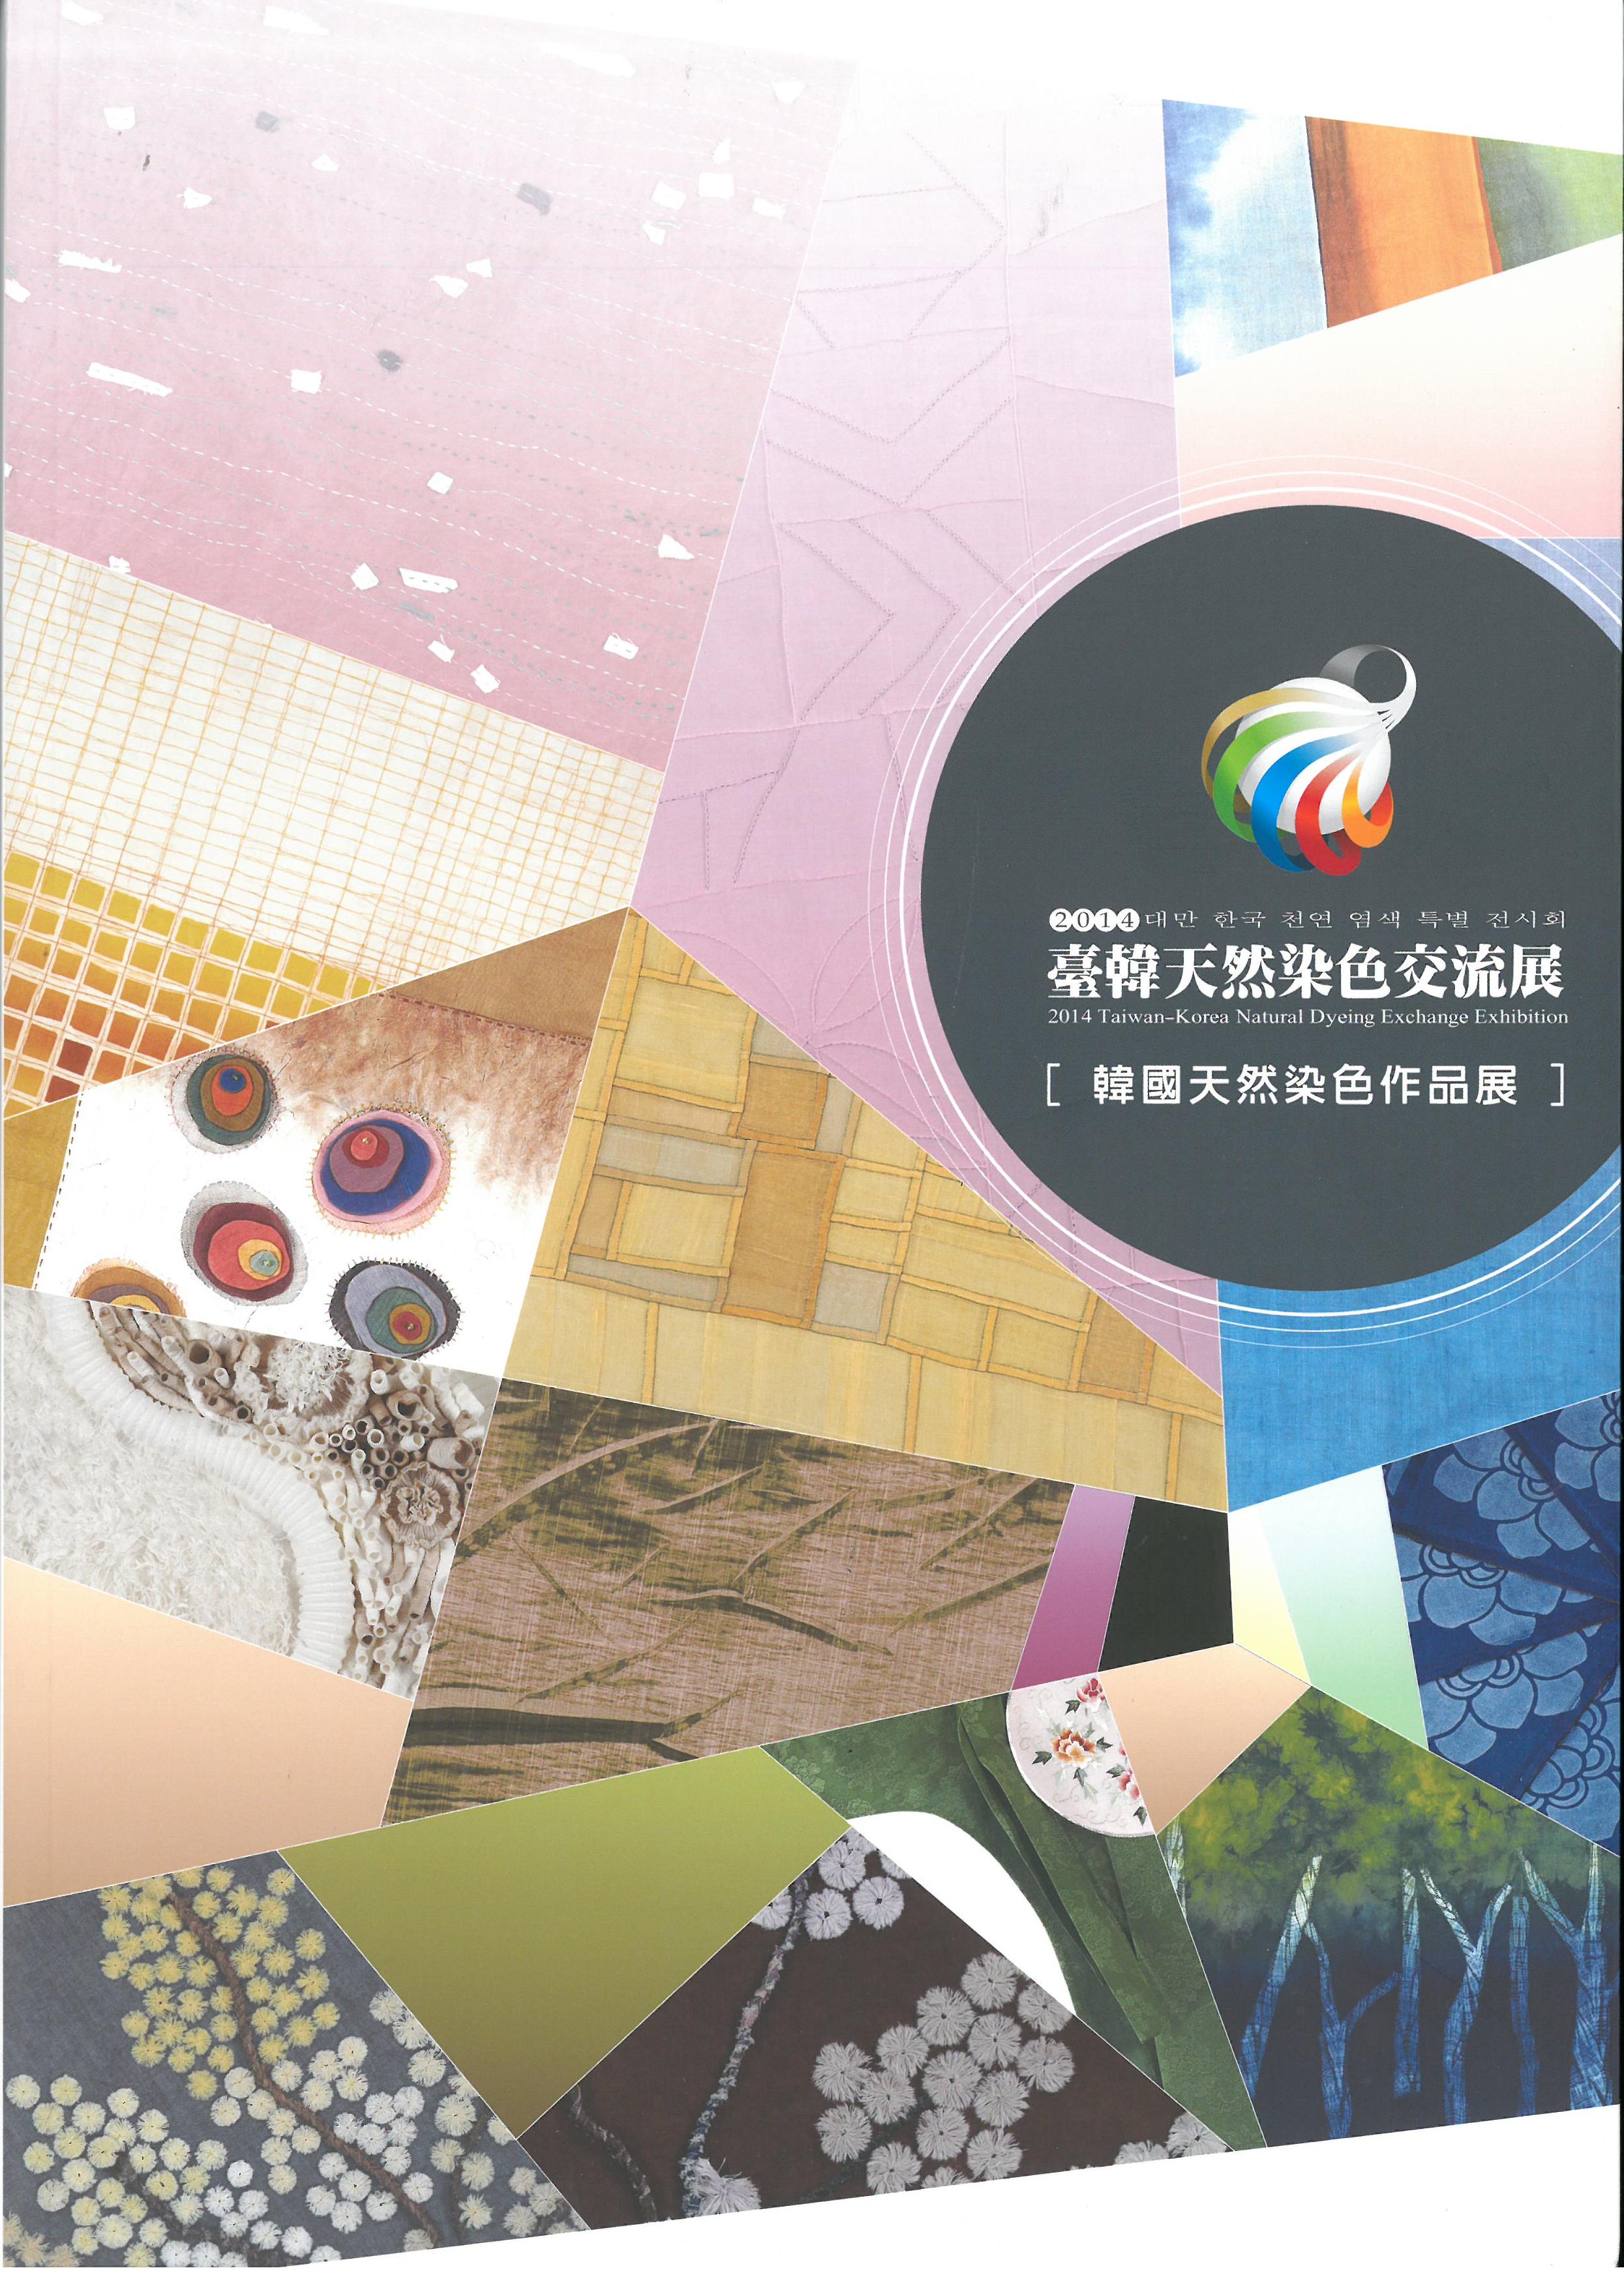 2014 臺韓天然染色交流展：韓國天然染色作品展 封面